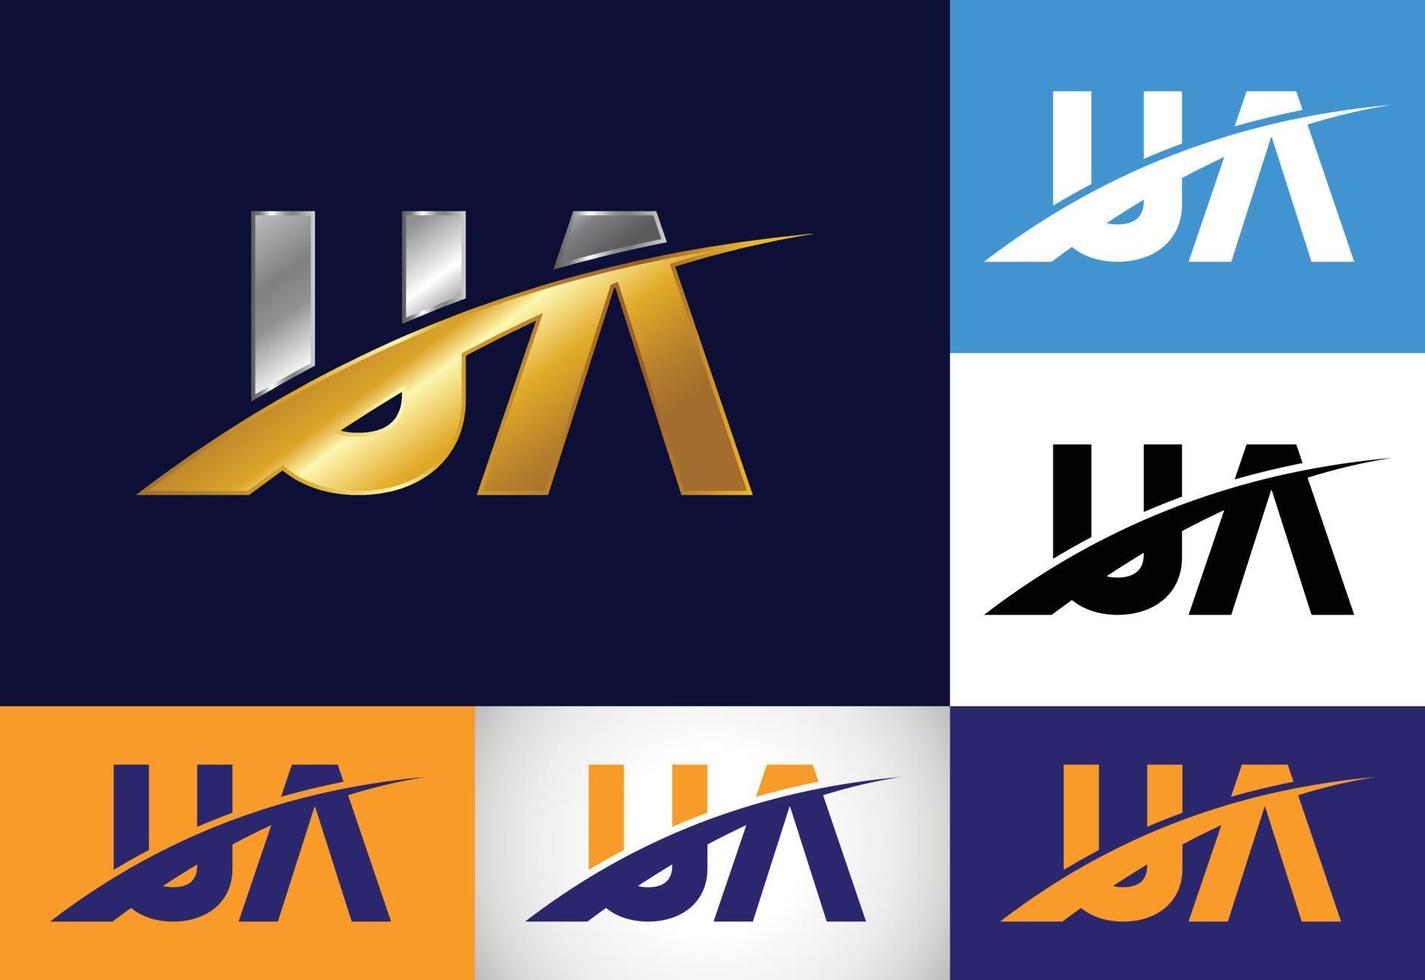 vetor de design de logotipo inicial monograma letra ua. símbolo gráfico do alfabeto para negócios corporativos